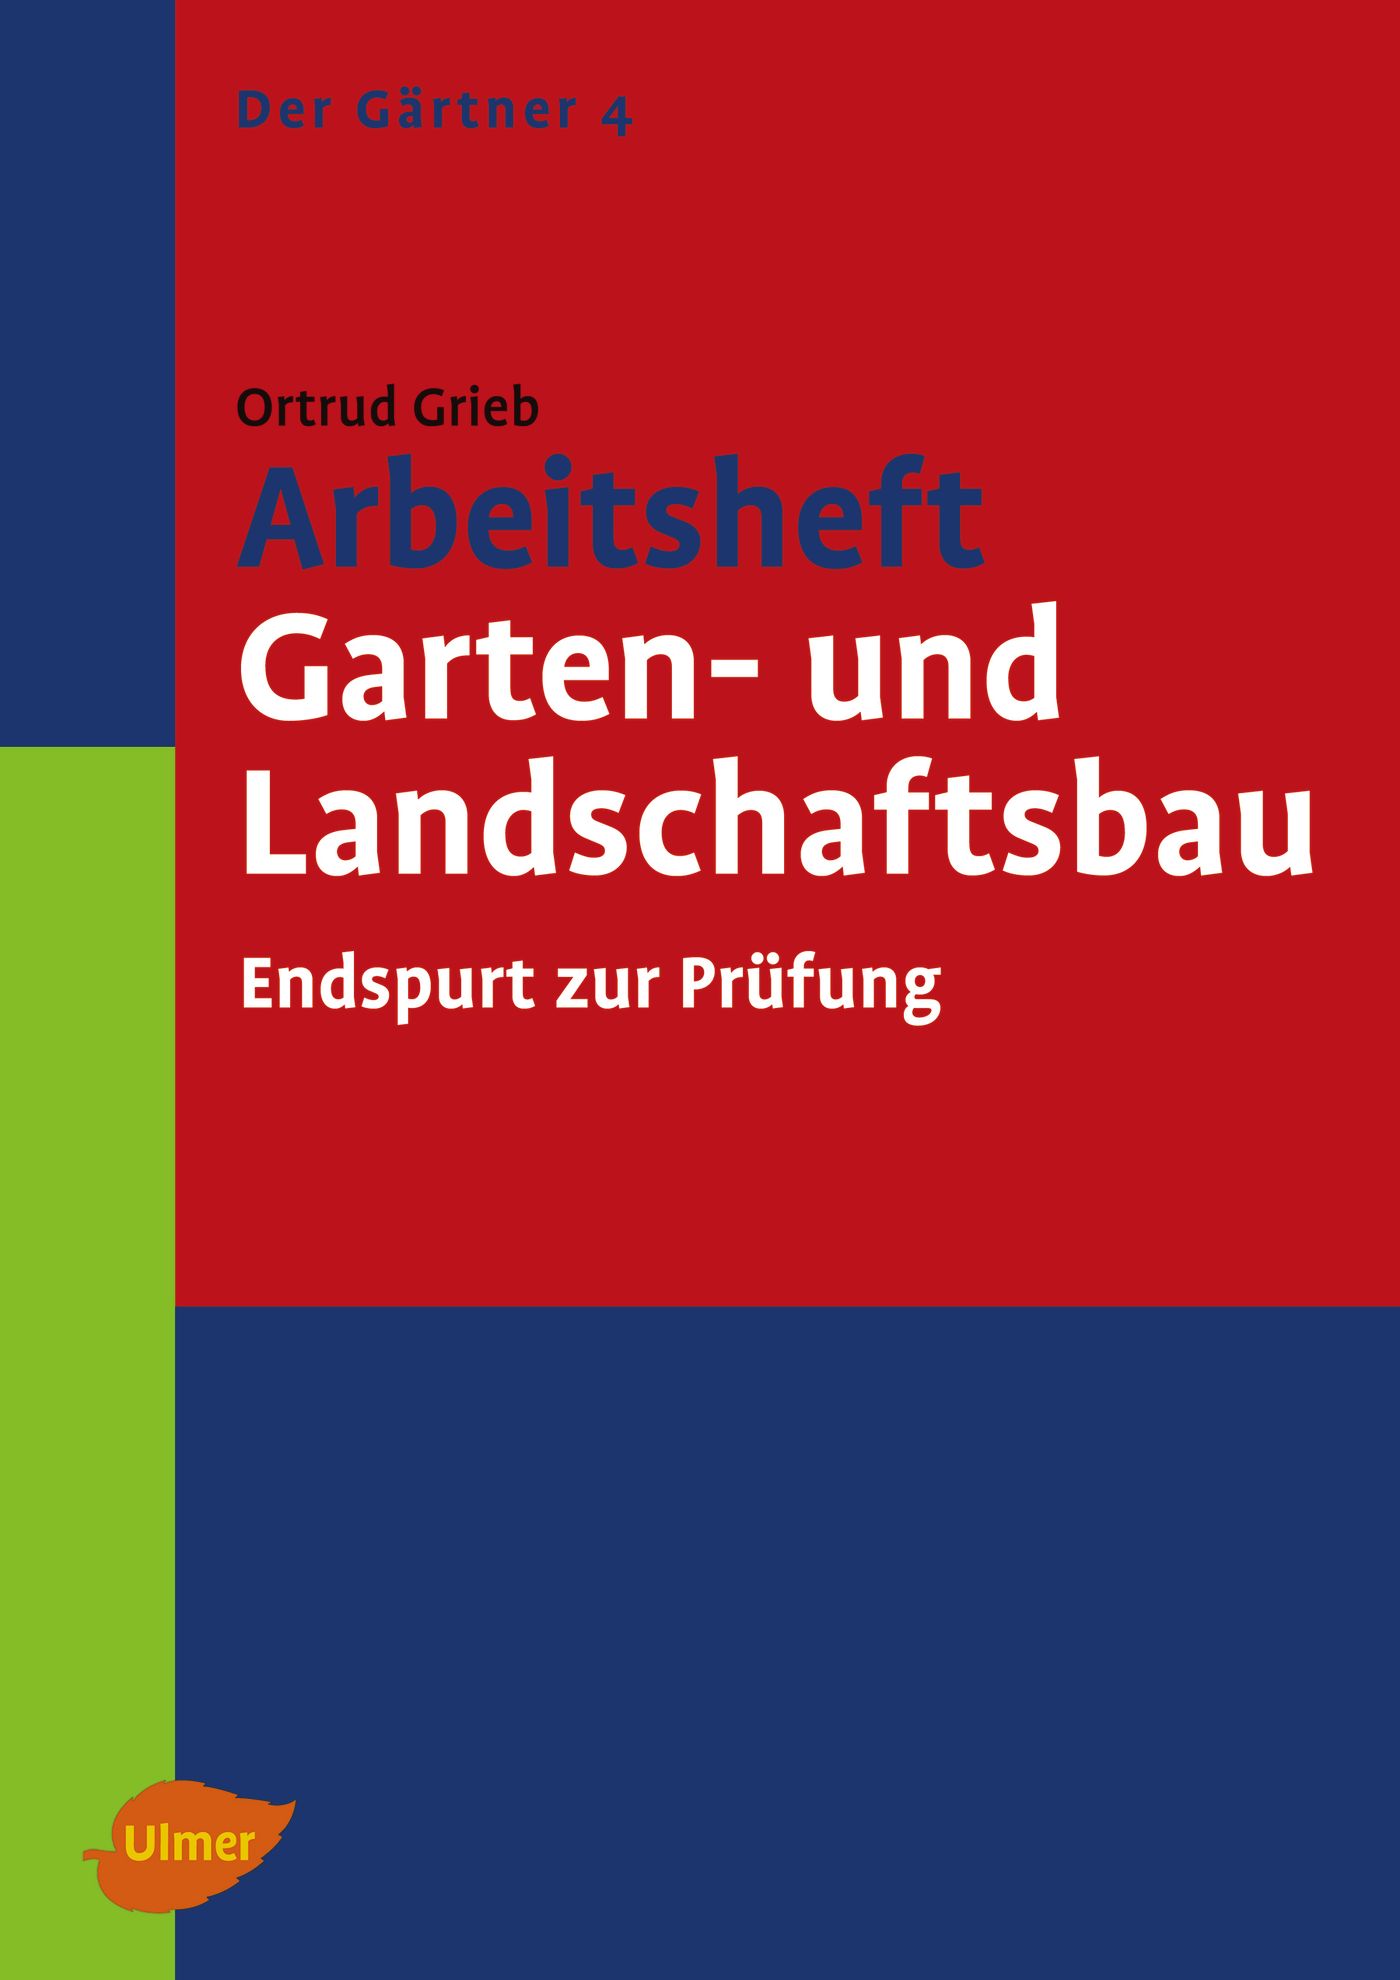 Ortrud Grieb / Arbeitsheft Garten- und Landschaftsbau - Ortrud Grieb